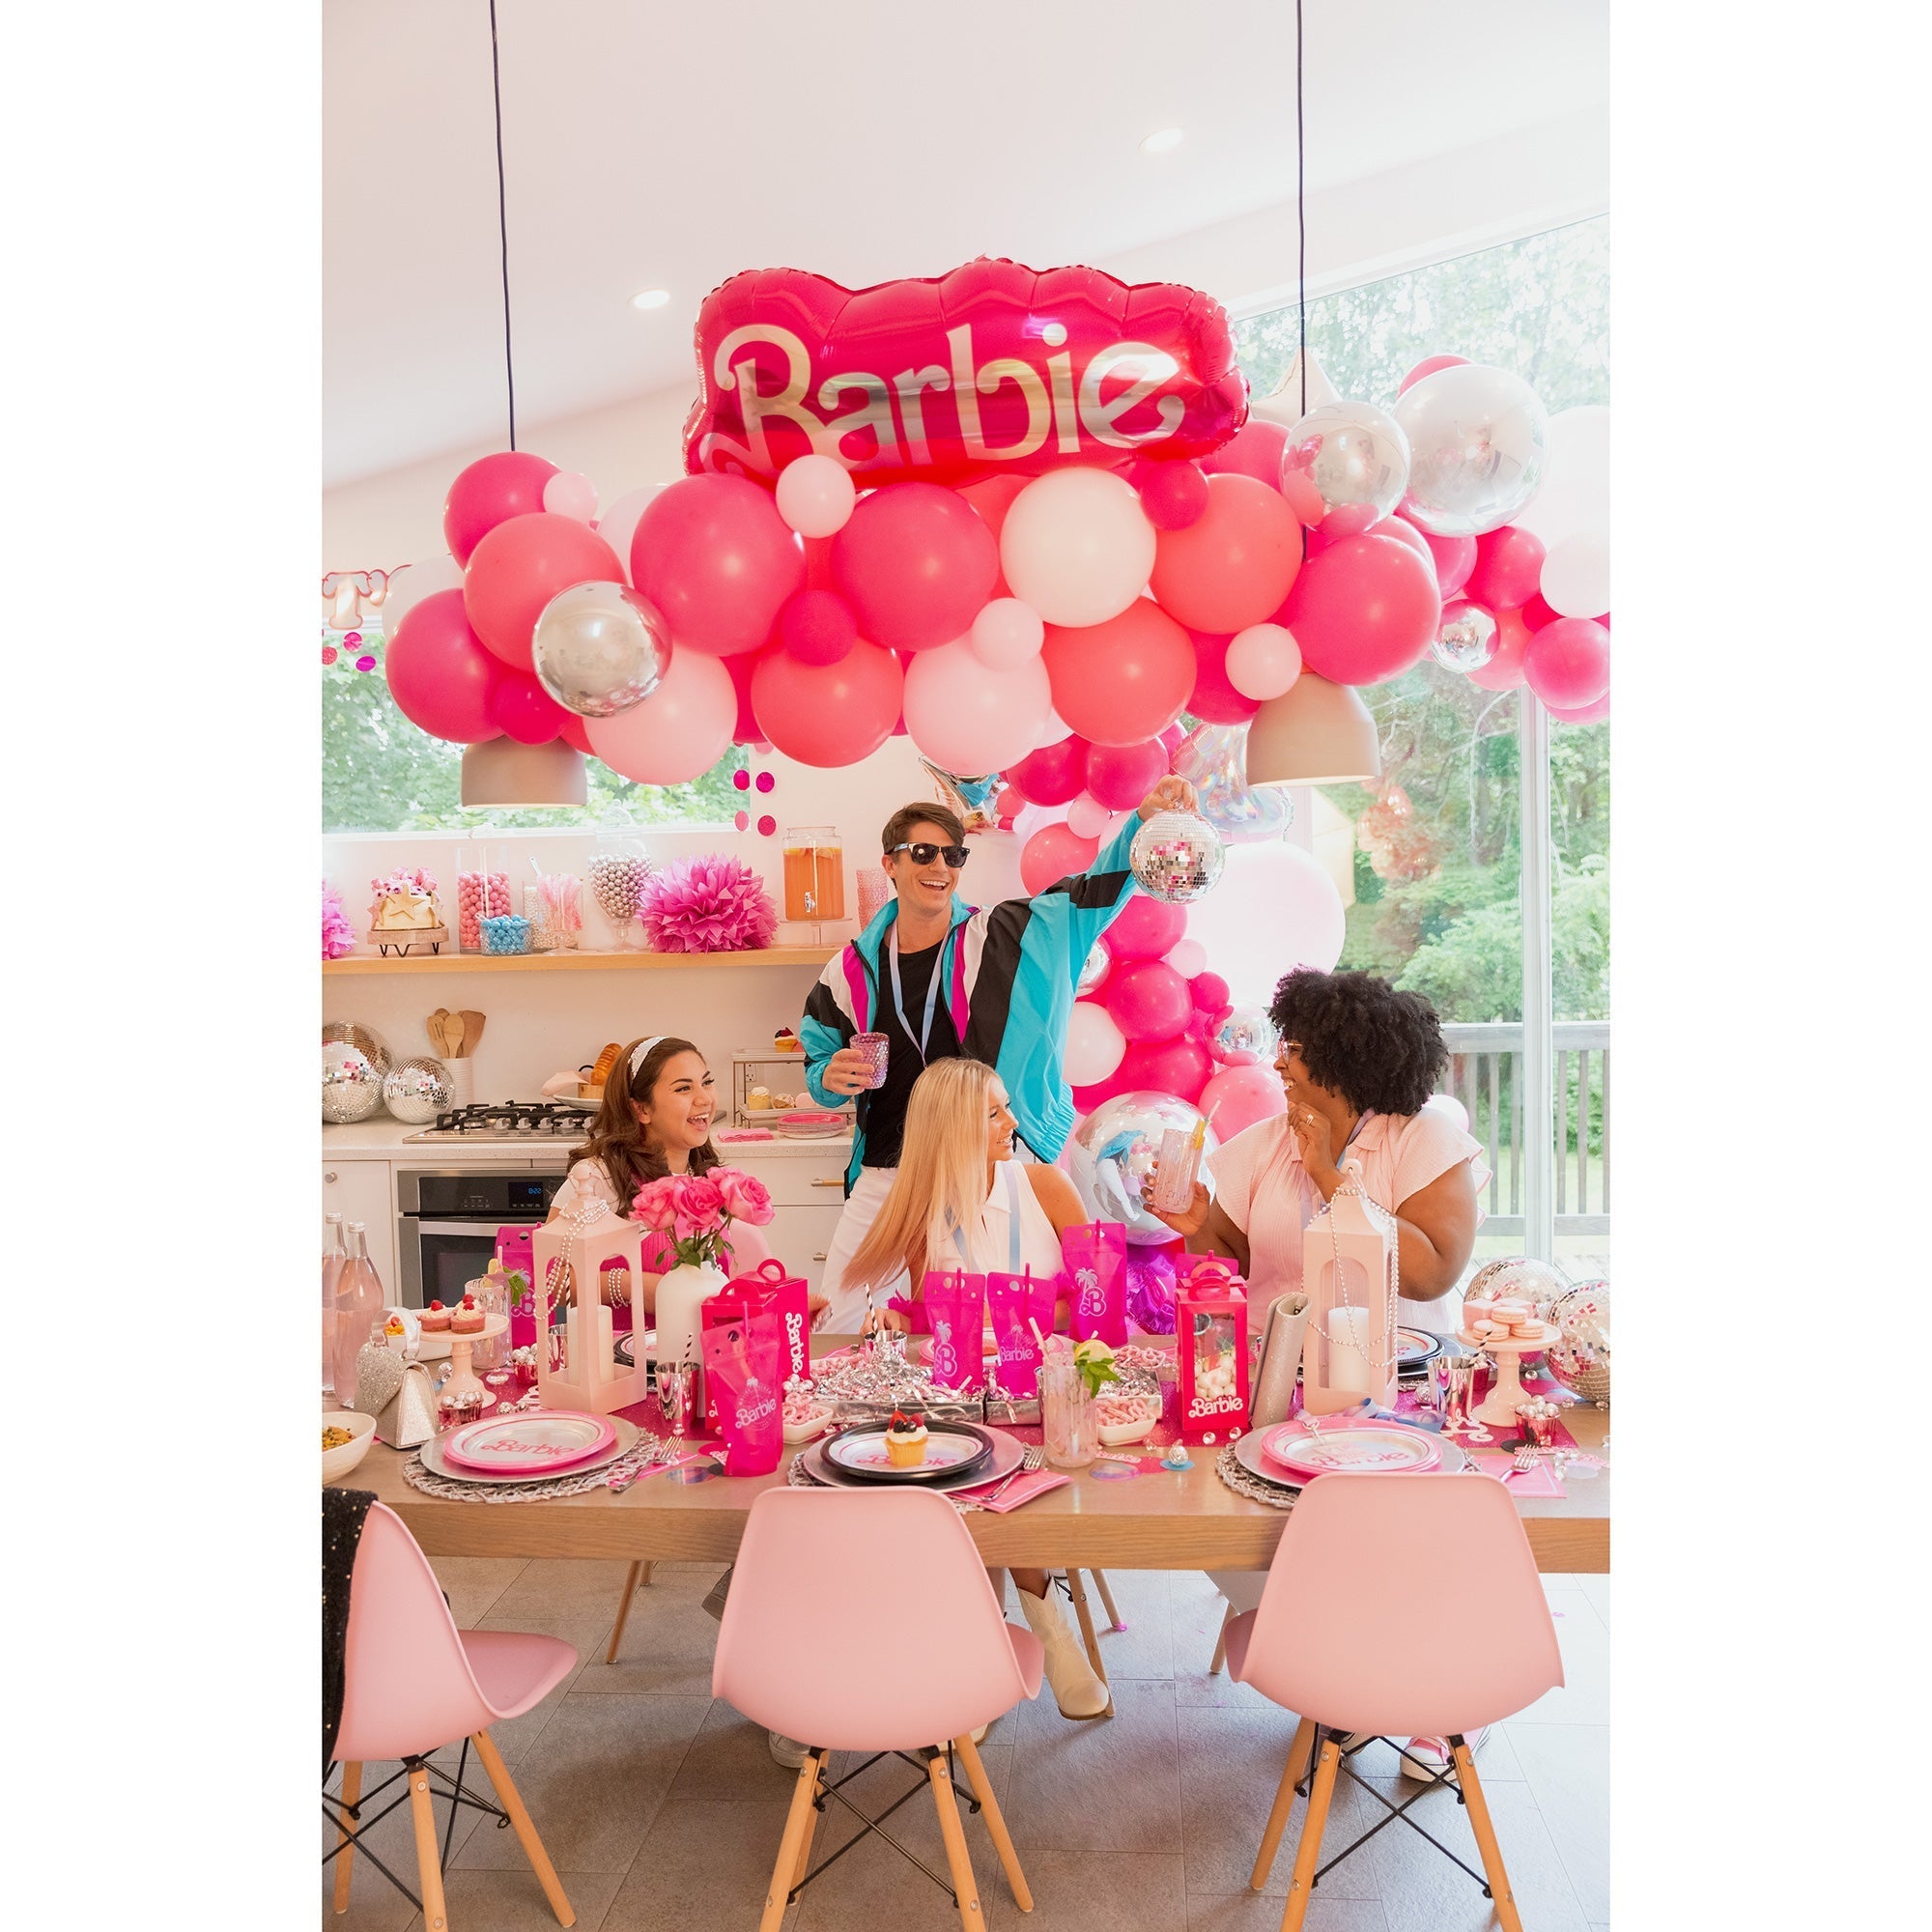 Barbie - assiettes - 8 pièces - 23 cm ø - karton - Rose - party - fête d